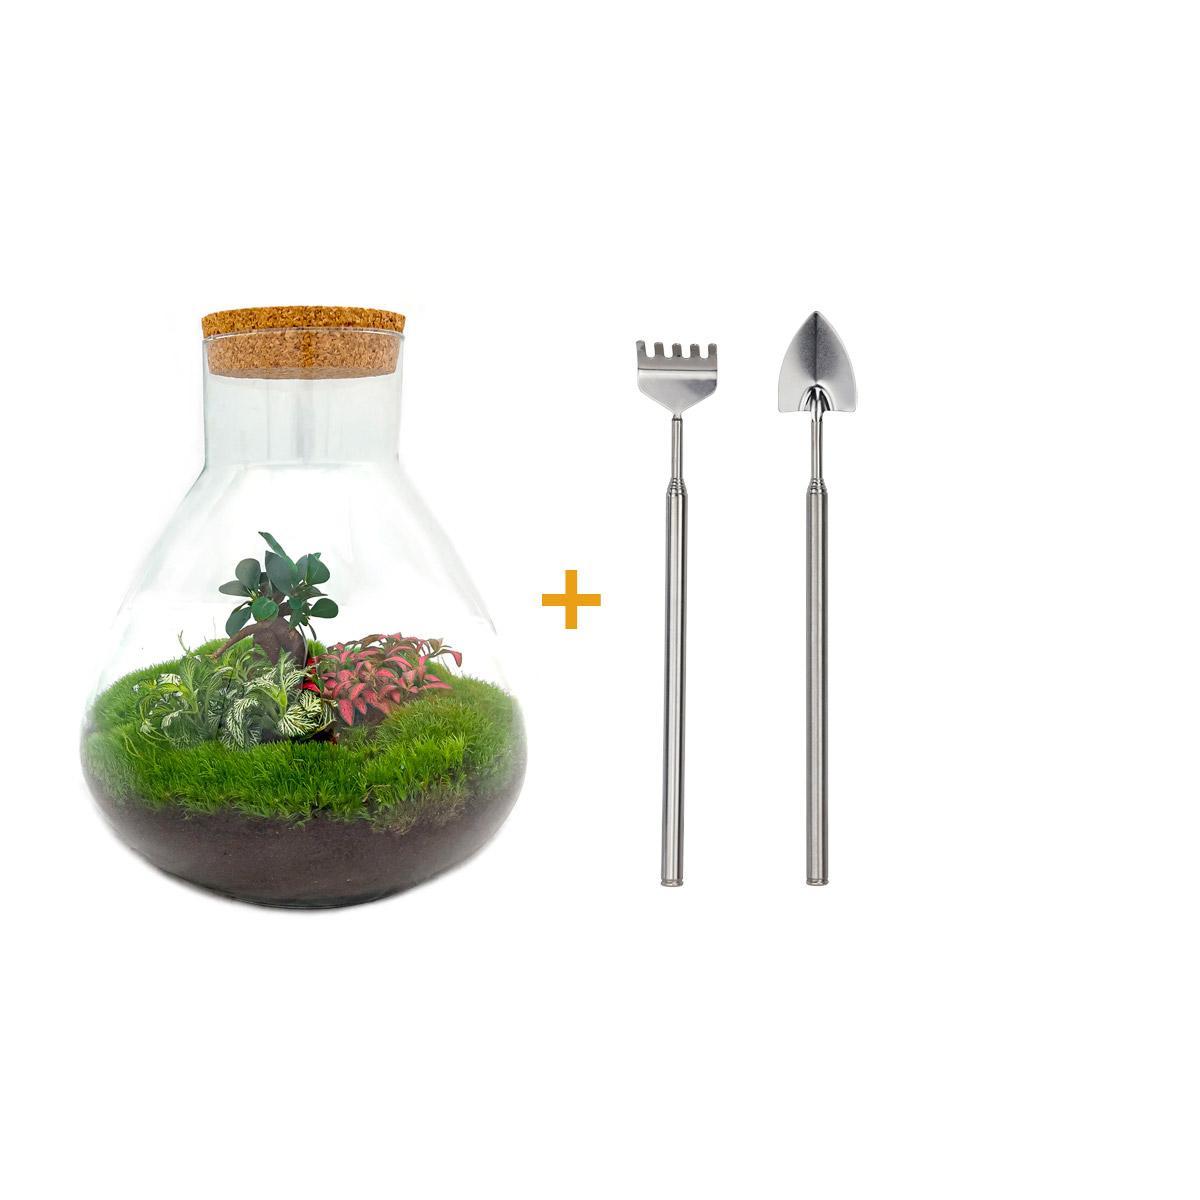 DIY terrarium - Sam XL Bonsai - ↑ 35 cm + Rake + Shovel